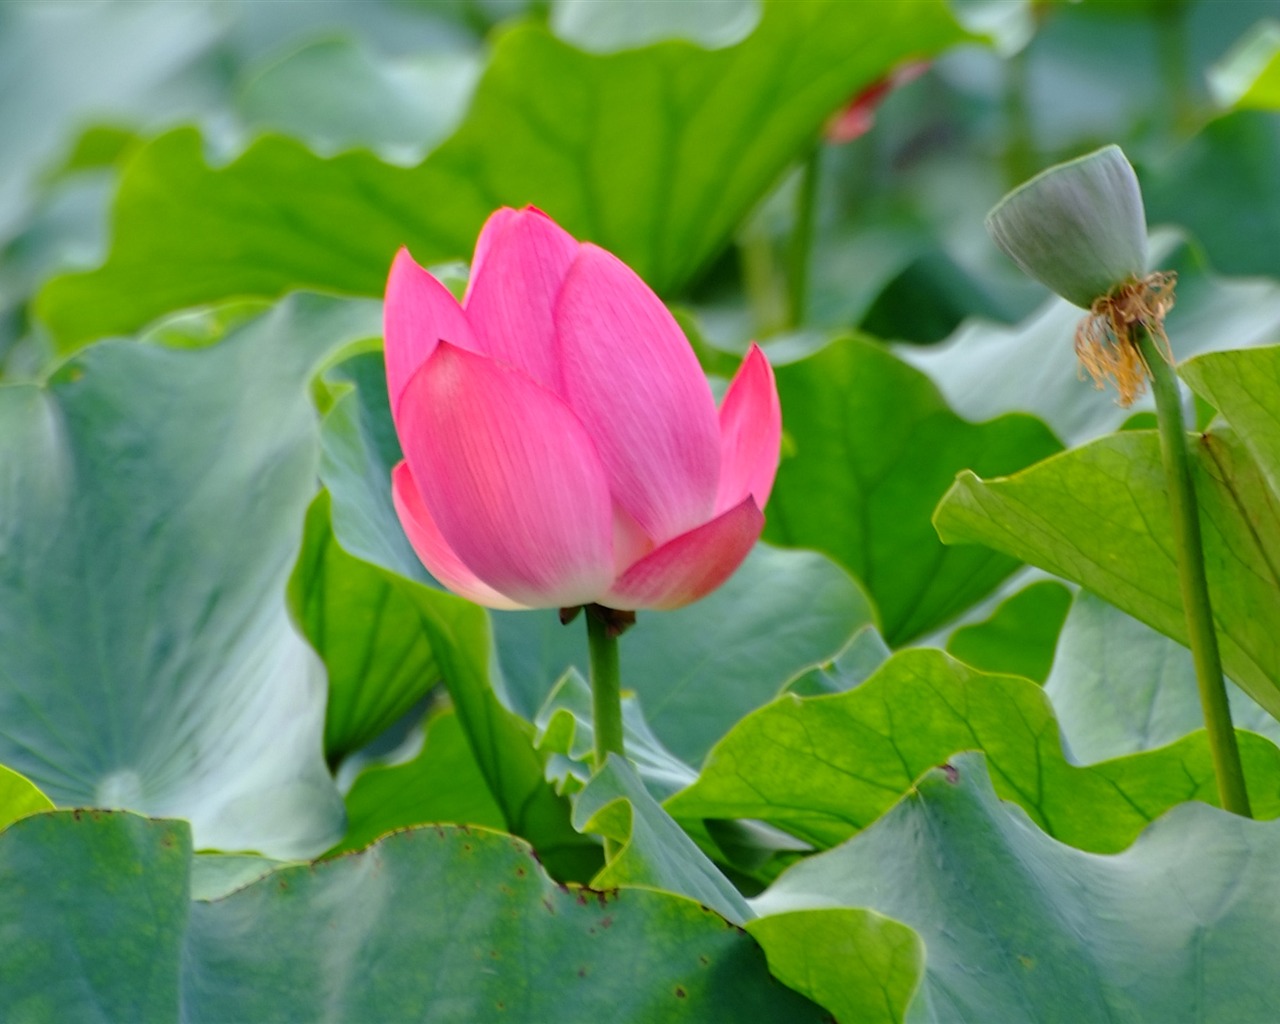 Rose Garden of the Lotus (rebar works) #7 - 1280x1024